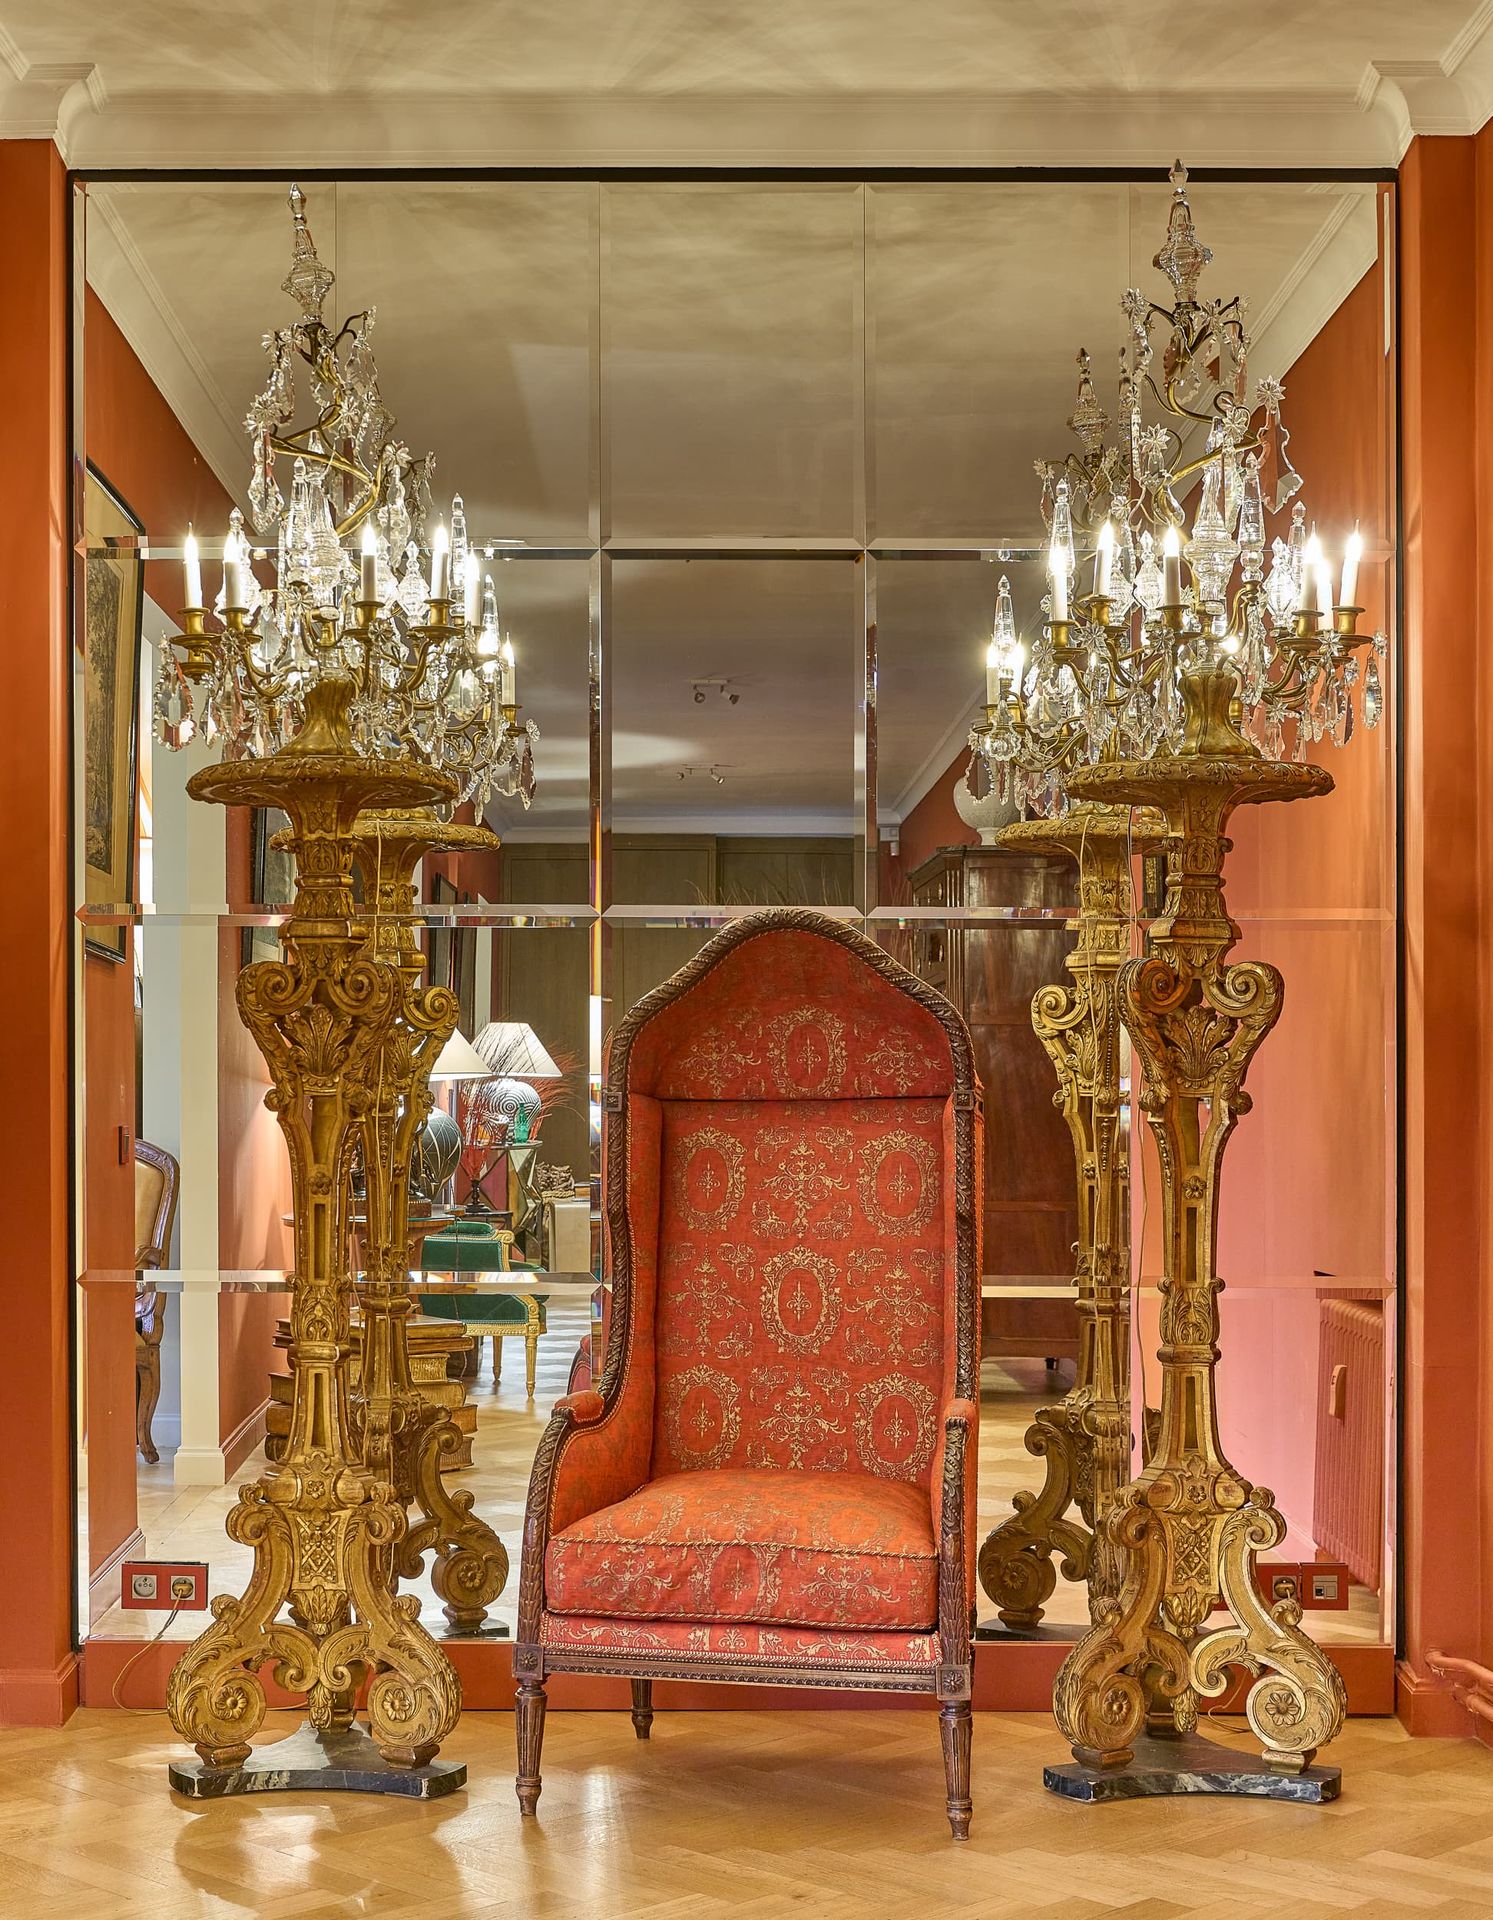 PAIRE DE GRANDES GIRANDOLES Estilo Luis XV, siglo XIX
En metal dorado y colgante&hellip;